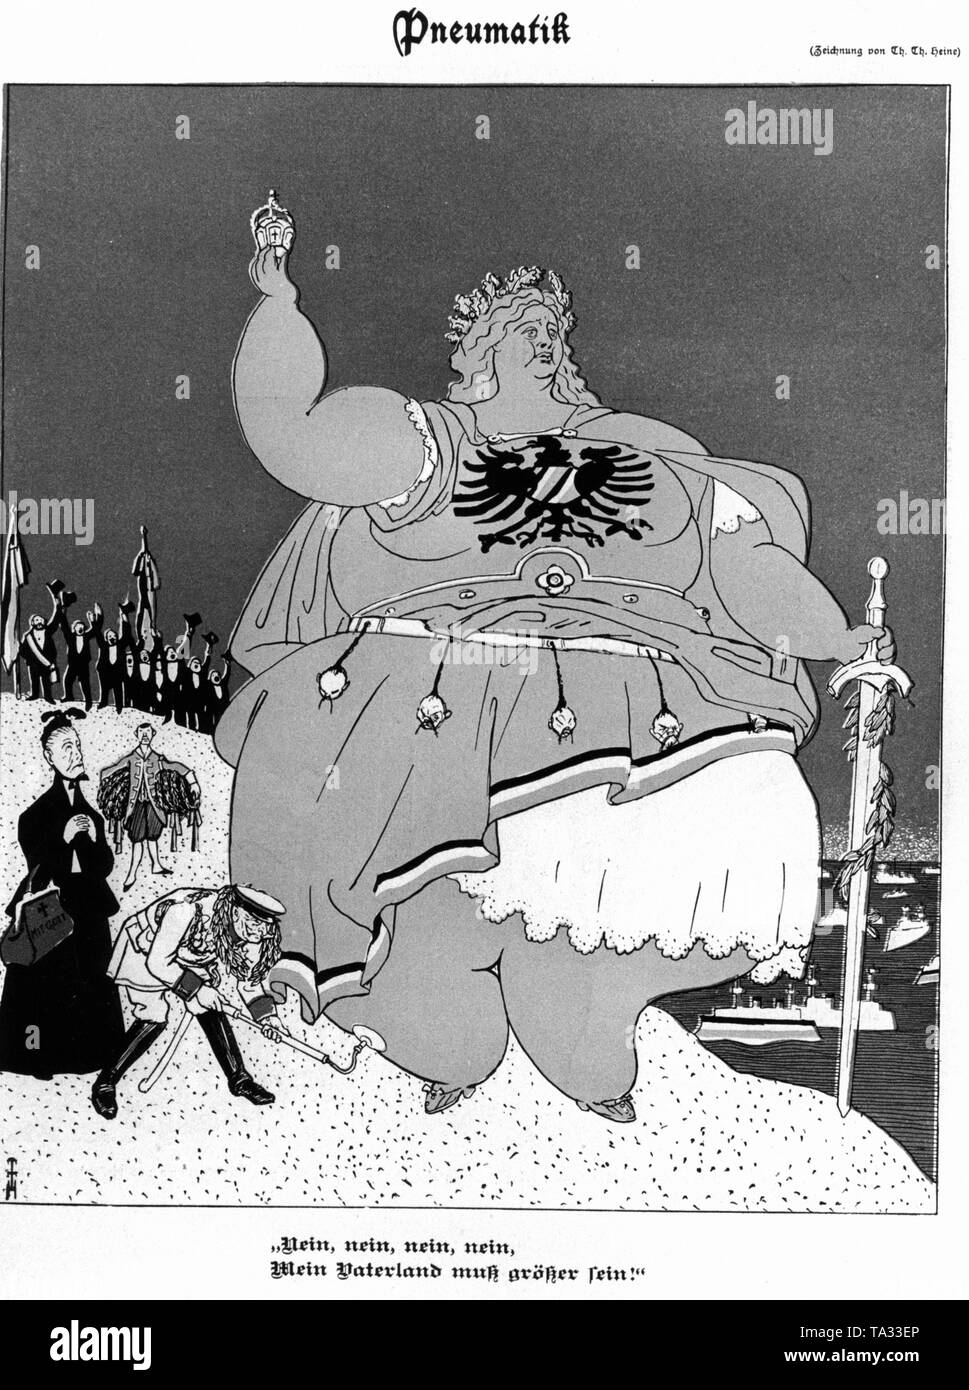 Dans le magazine allemand satirique Simplicissimus sous le titre 'pneumatic', caricature de Germanie poupée avec la phrase : "Non, non, ma patrie doit être supérieure !'. Dans l'arrière-plan et les citoyens d'encouragement des navires en mer Banque D'Images